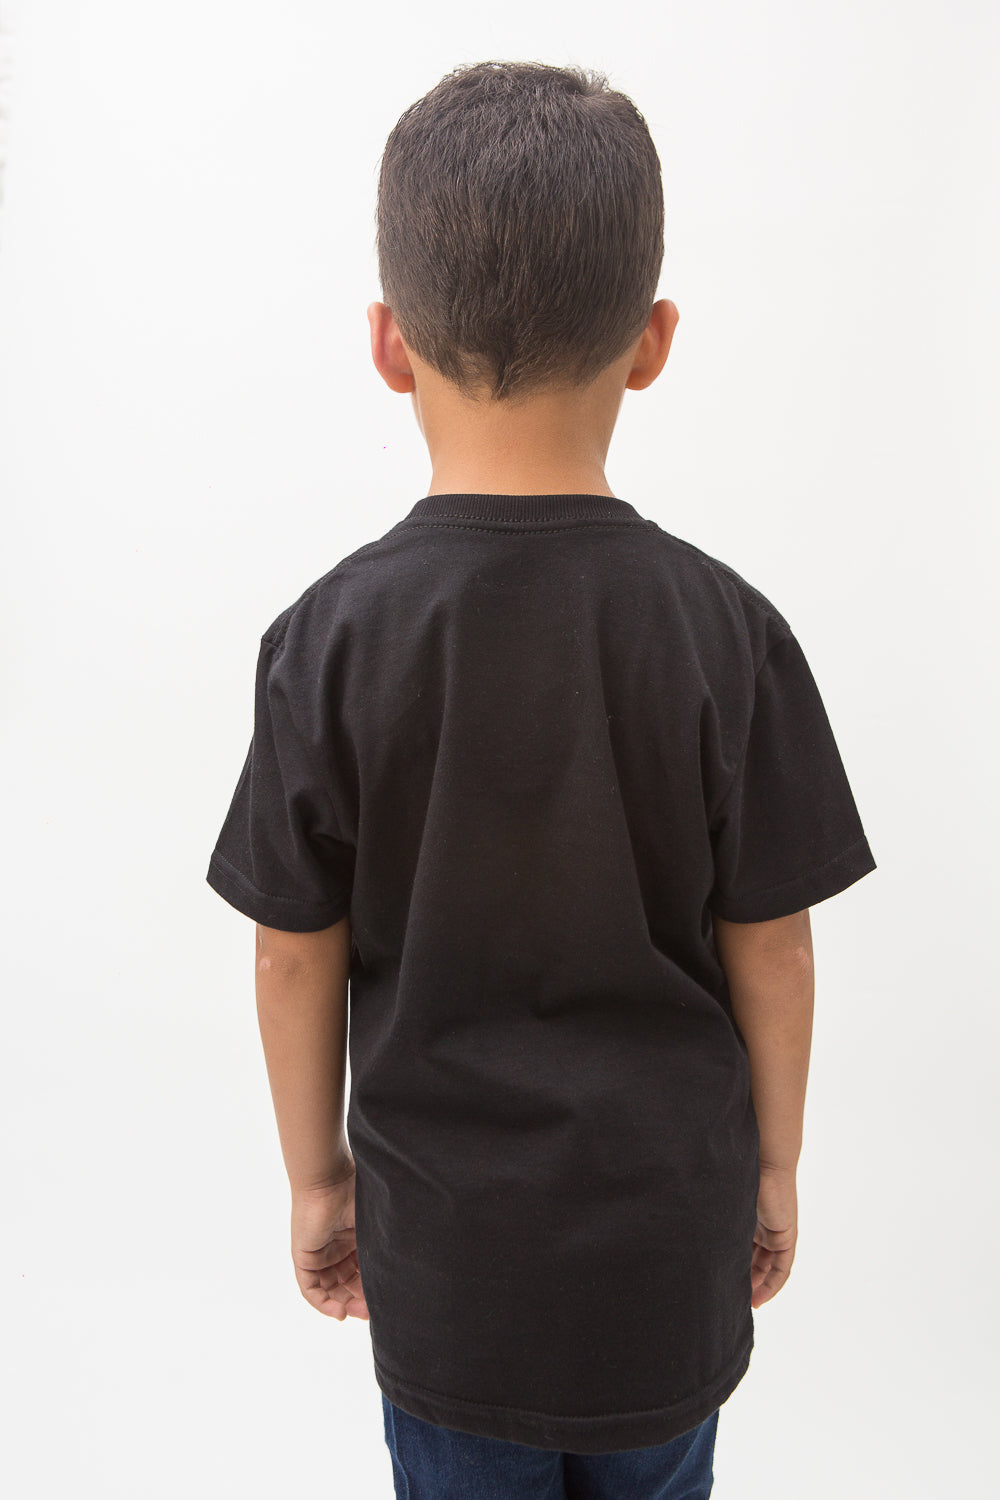 Camiseta Incognito V2 Infantil - Preta